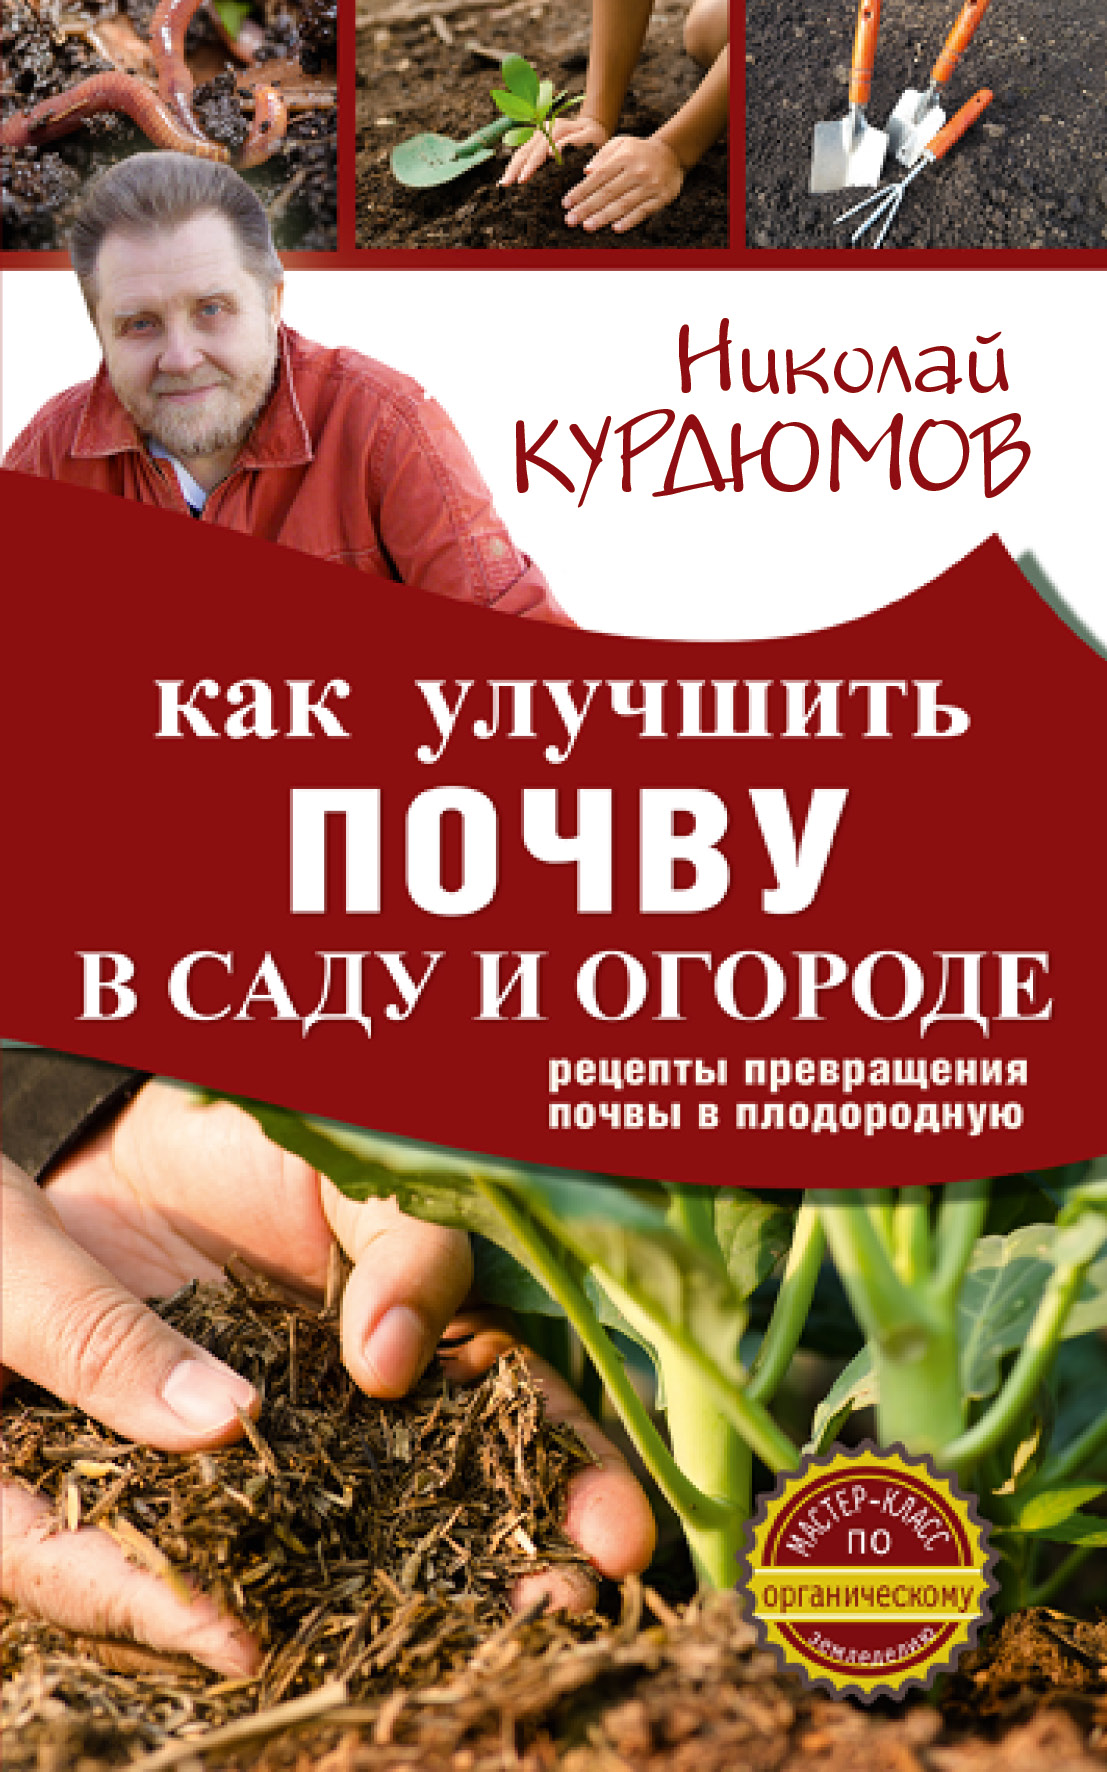 Курдюмов Николай Иванович Как улучшить почву в саду и огороде. Рецепты превращения почвы в плодородную - страница 0